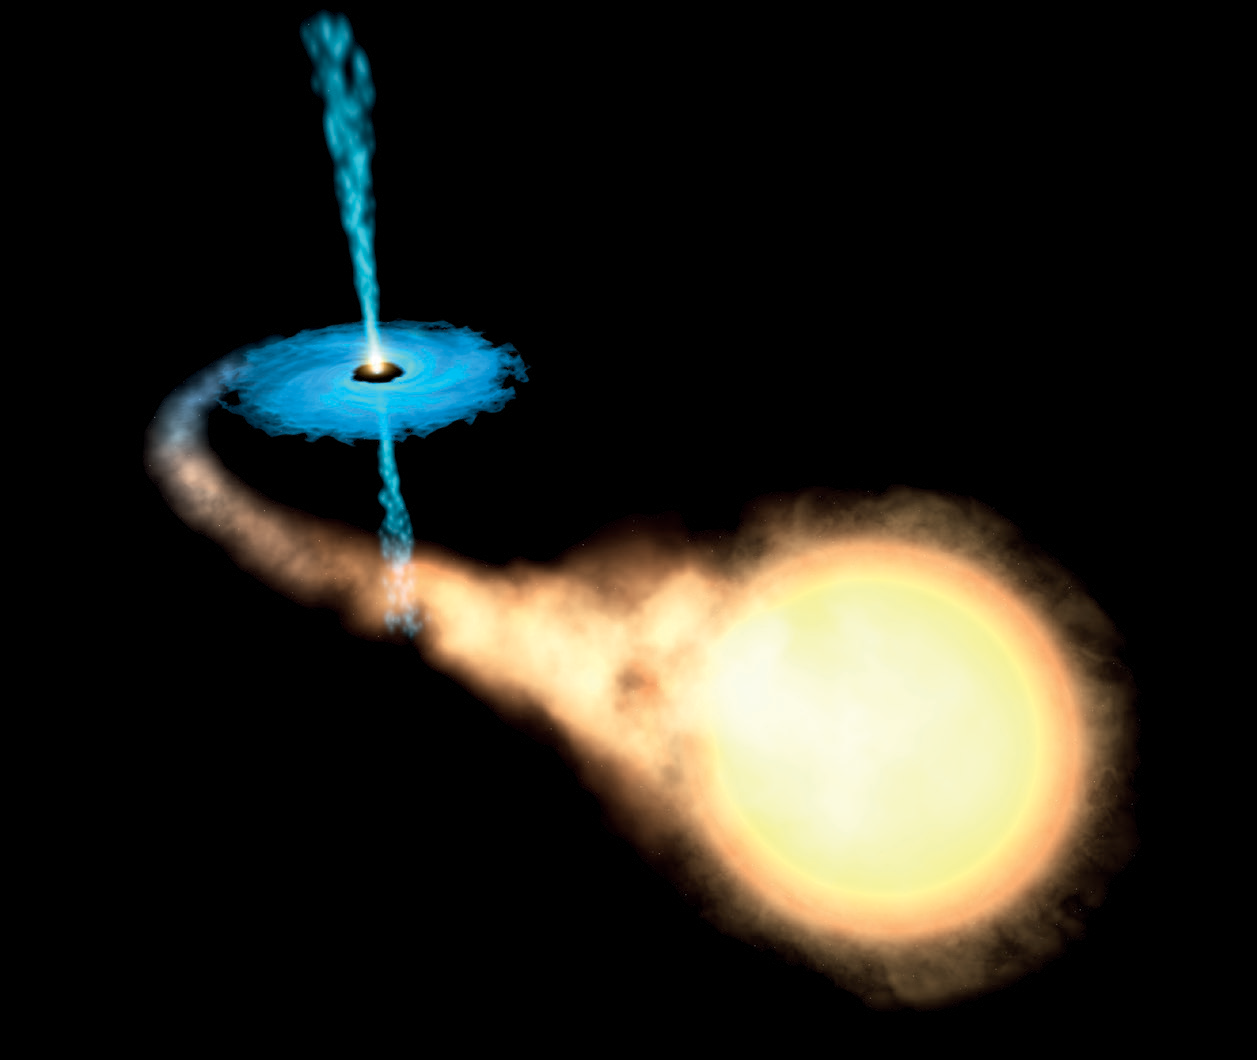 Dysk akrecyjny powstały wskutek pochłaniania przez czarną dziurę pobliskiej materii gwiazdowej. Graf. za: ESA/Hubble, CC BY 4.0